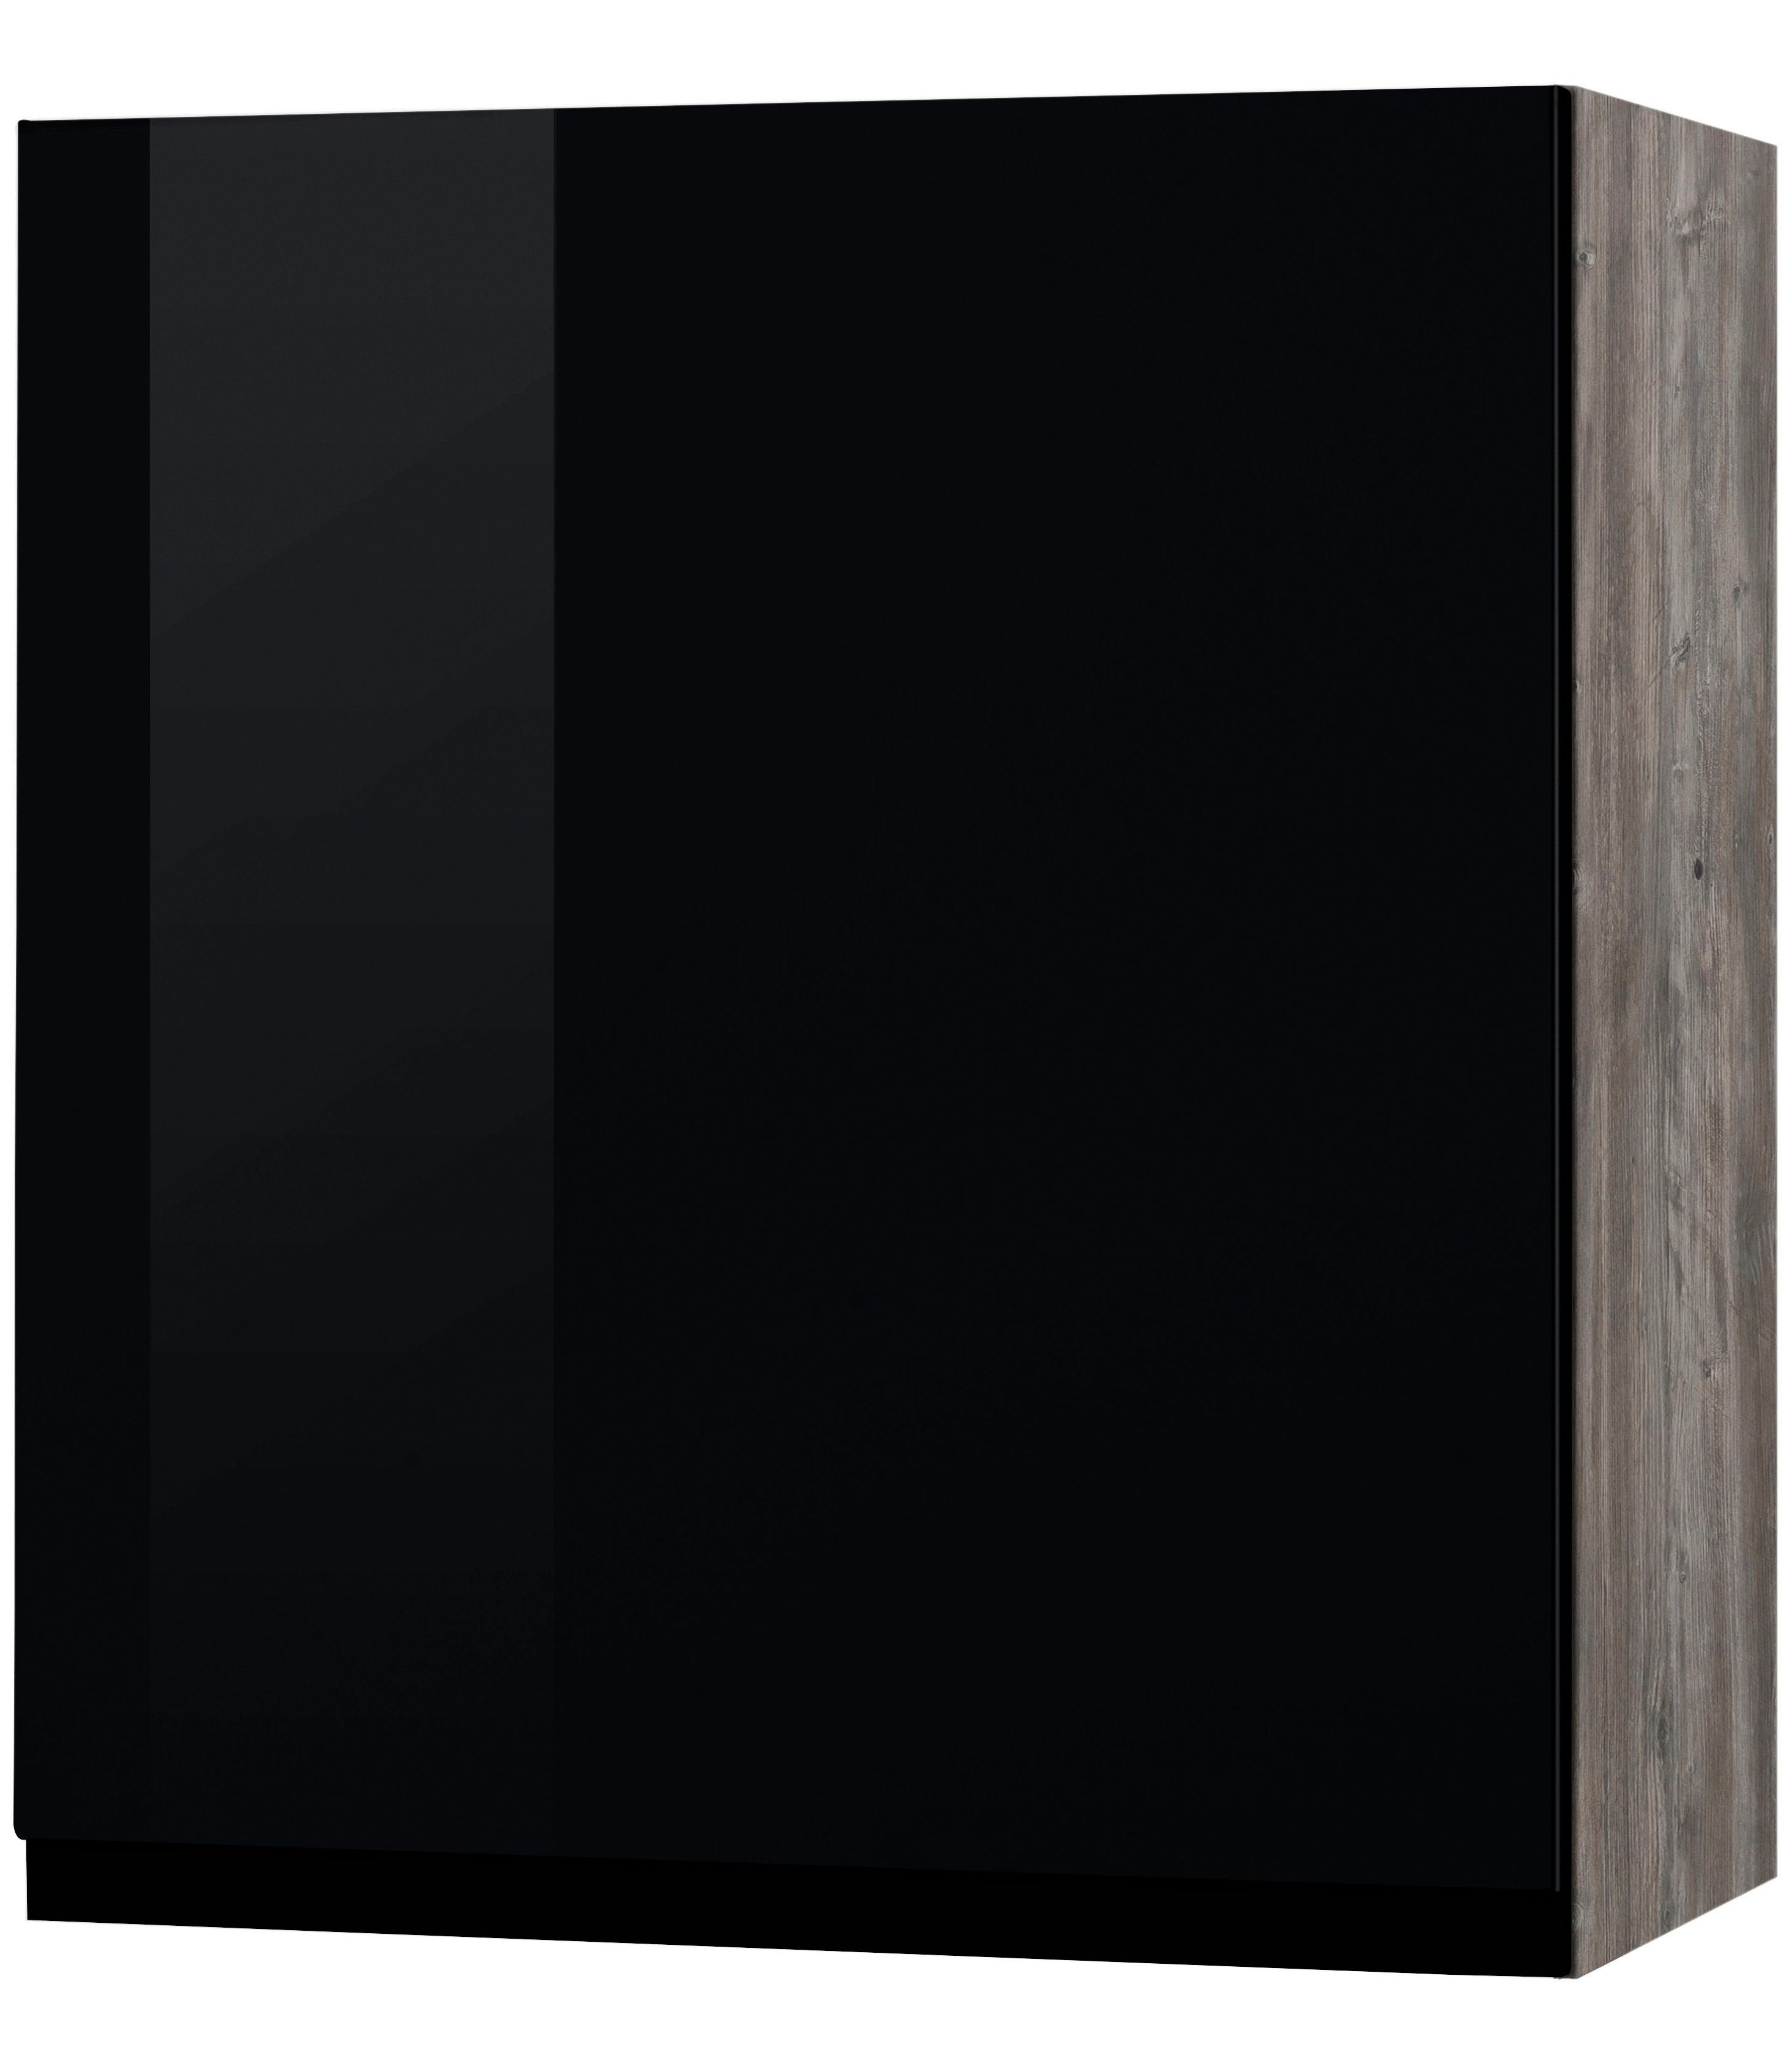 HELD MÖBEL Hängeschrank Virginia 50 cm breit, mit 1 Tür schwarz Hochglanz | eichevintage